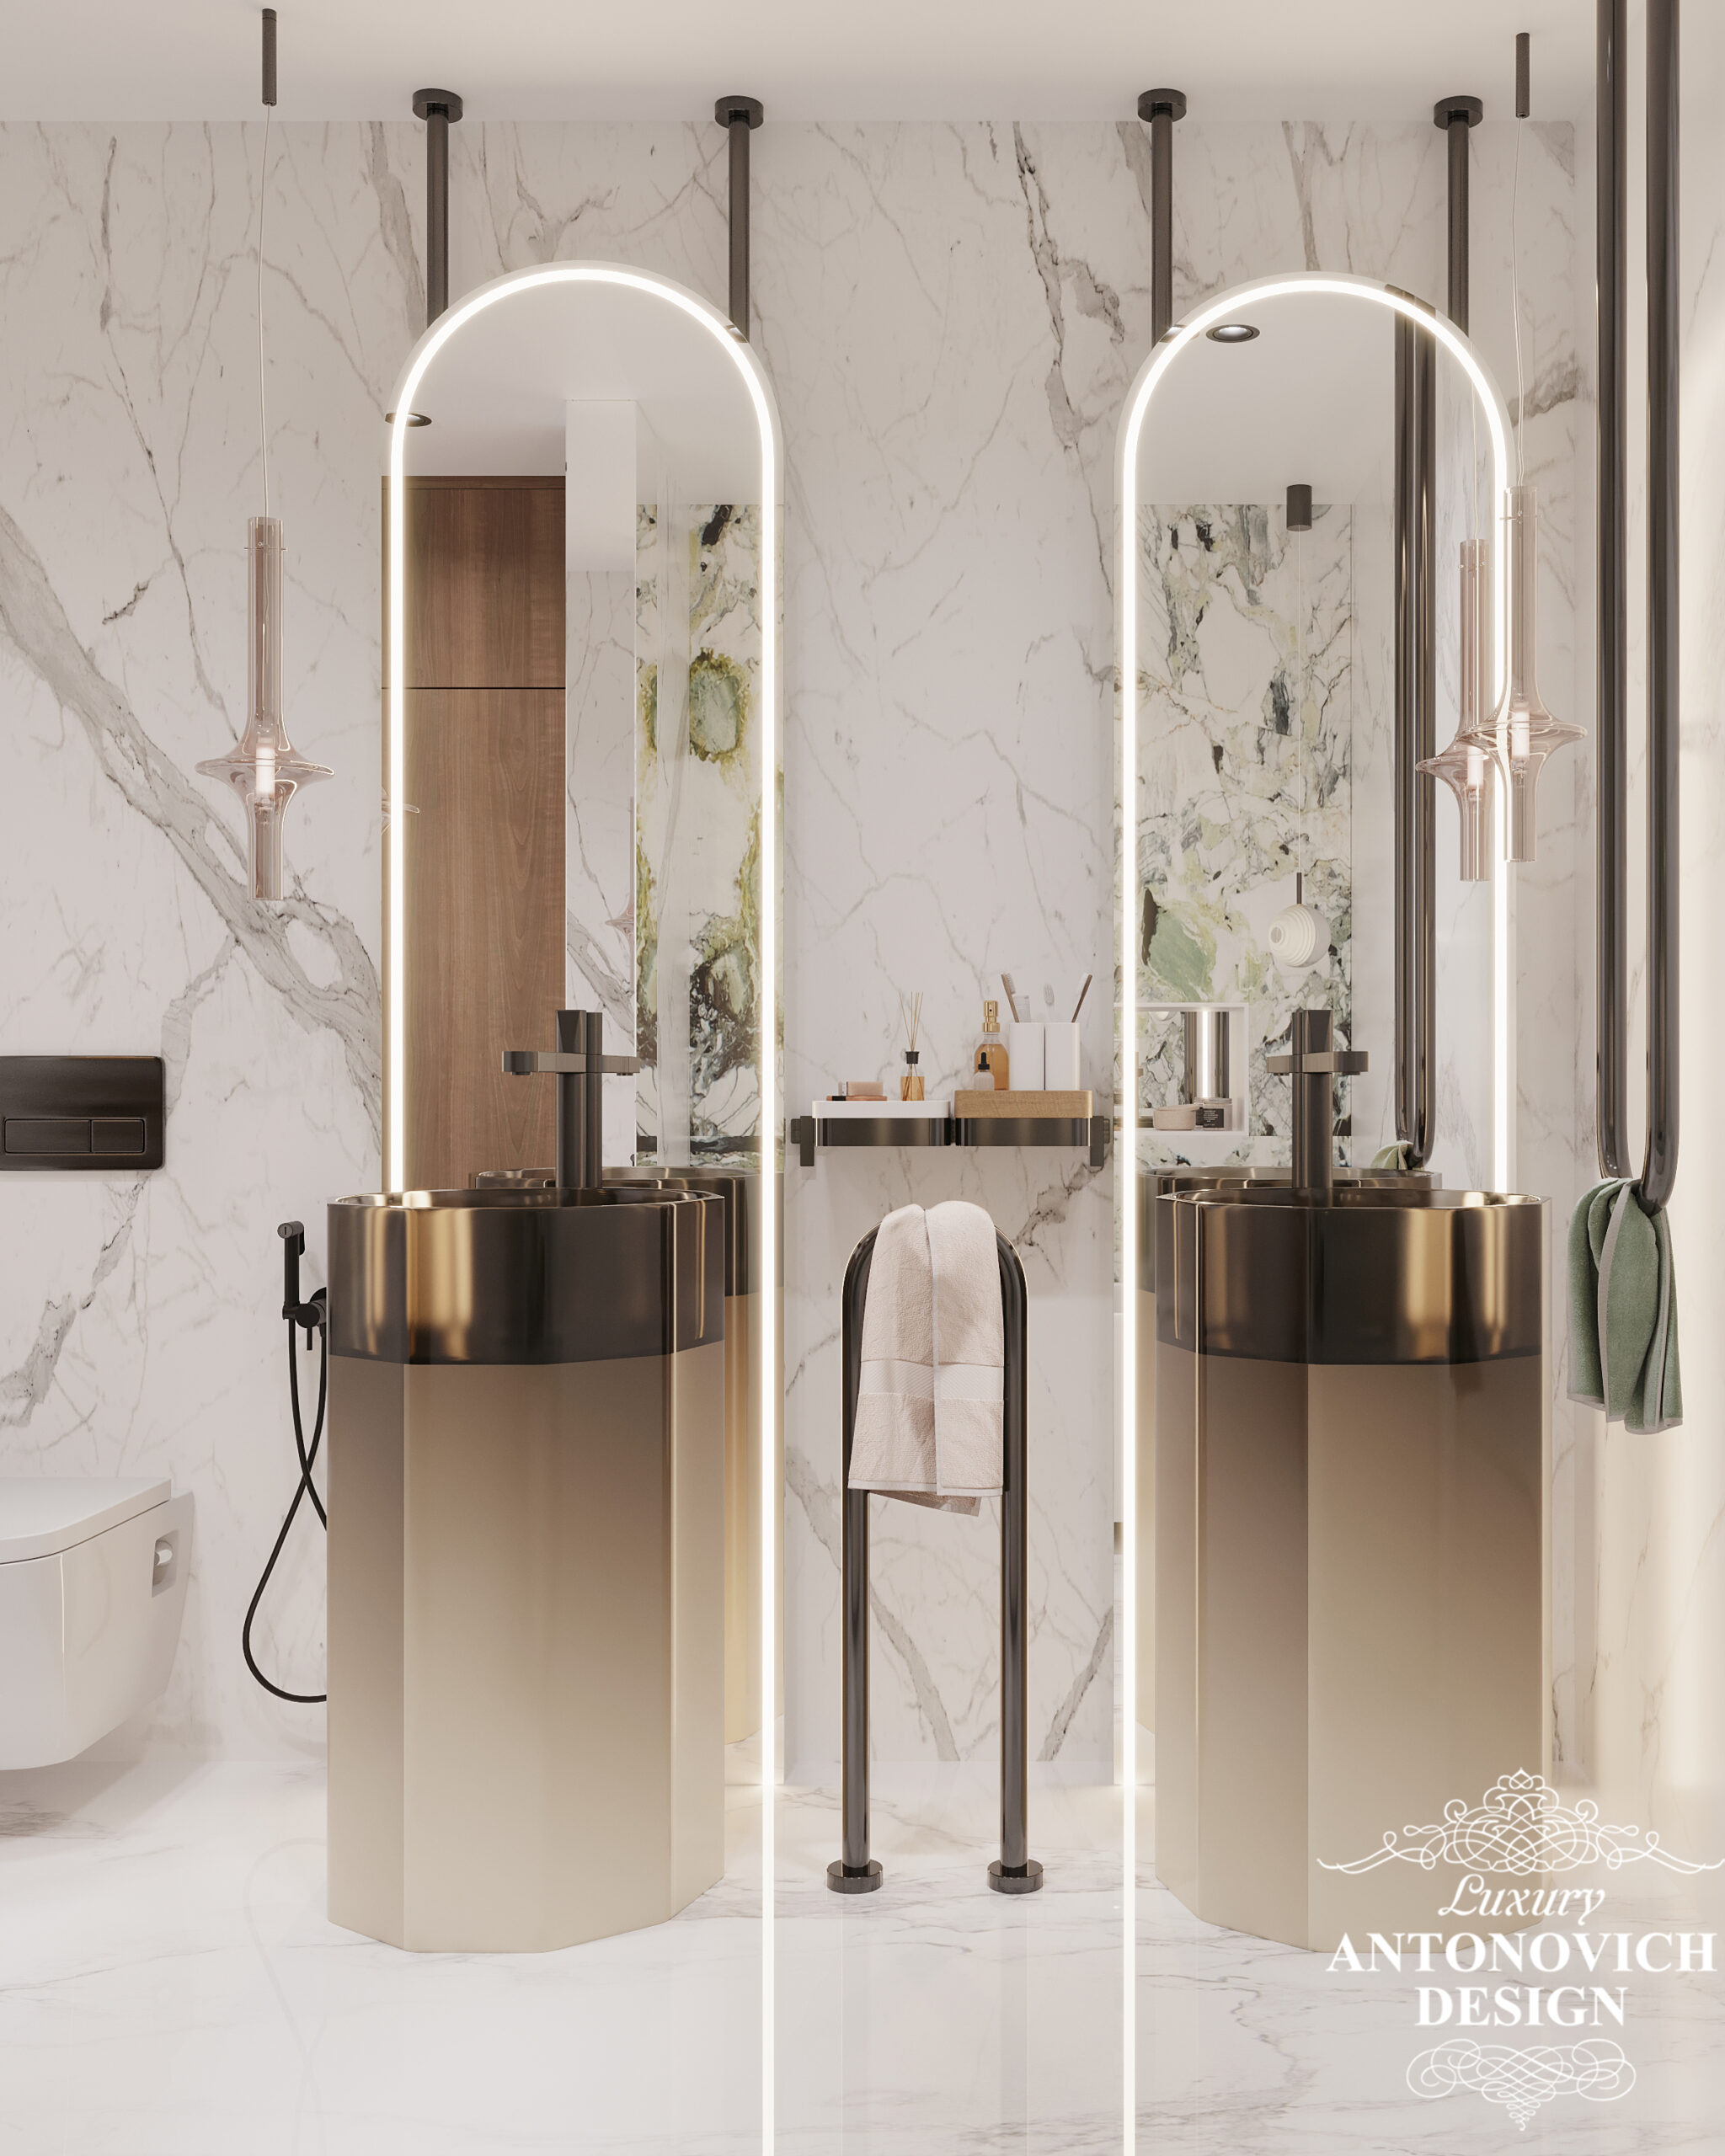 тильный дизайн проект ванной с встроенными напольными умывальниками и зеркалами с яркой подсветкой.